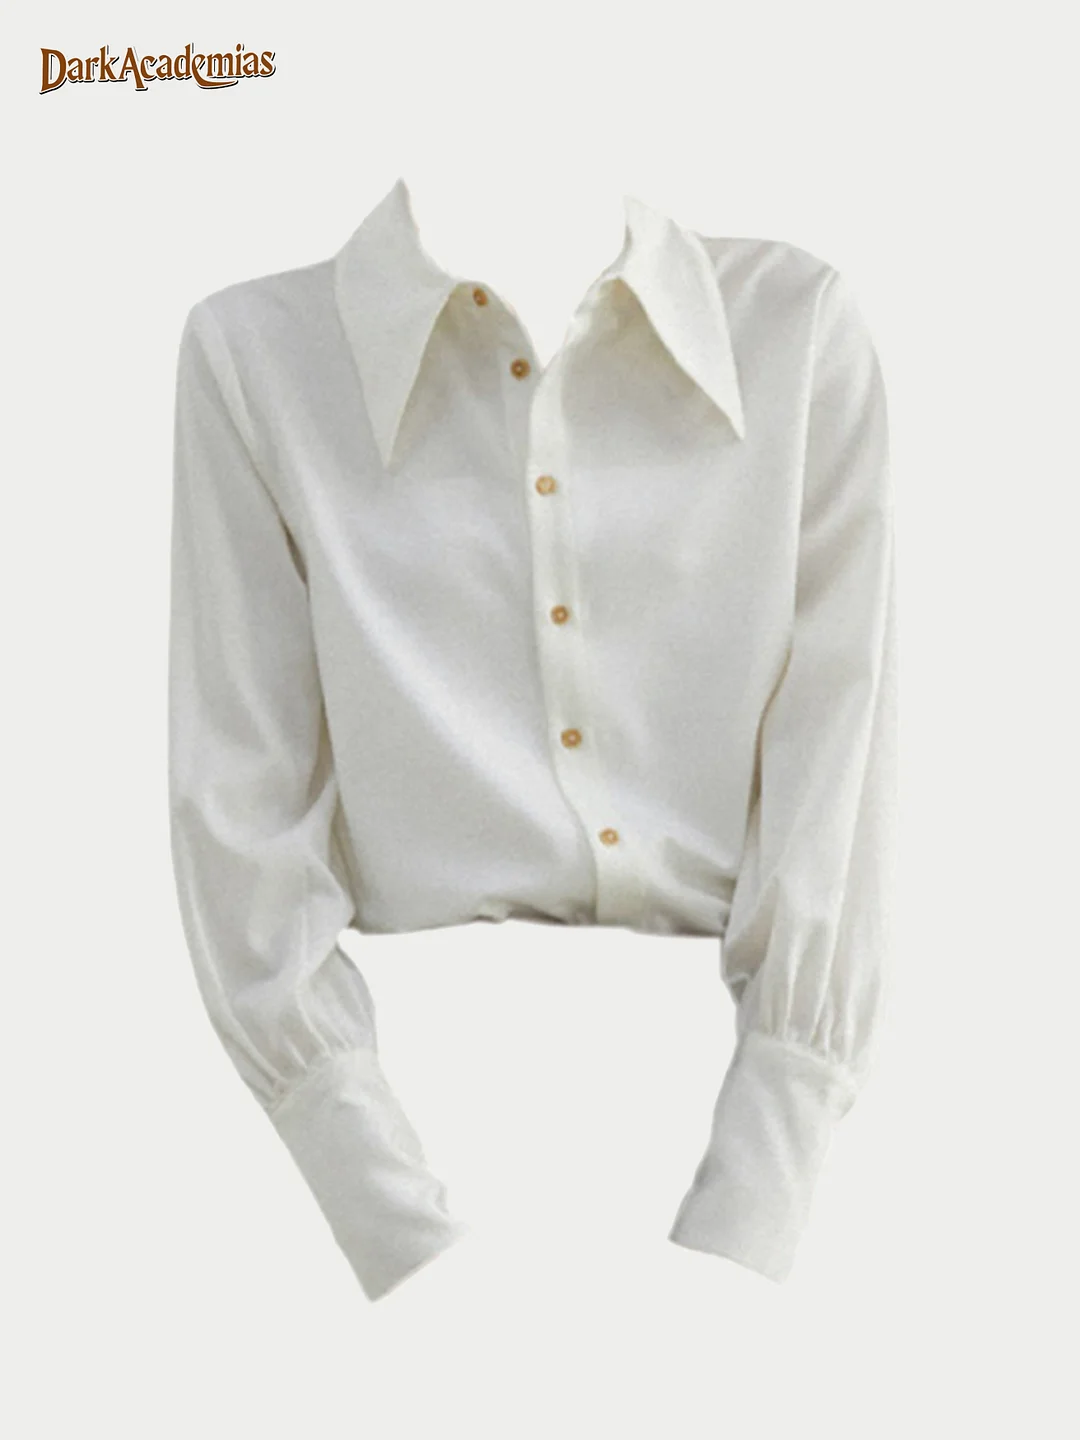 Darkacademias White Preppy Style Pointed Collar Shirt / DarkAcademias /Darkacademias